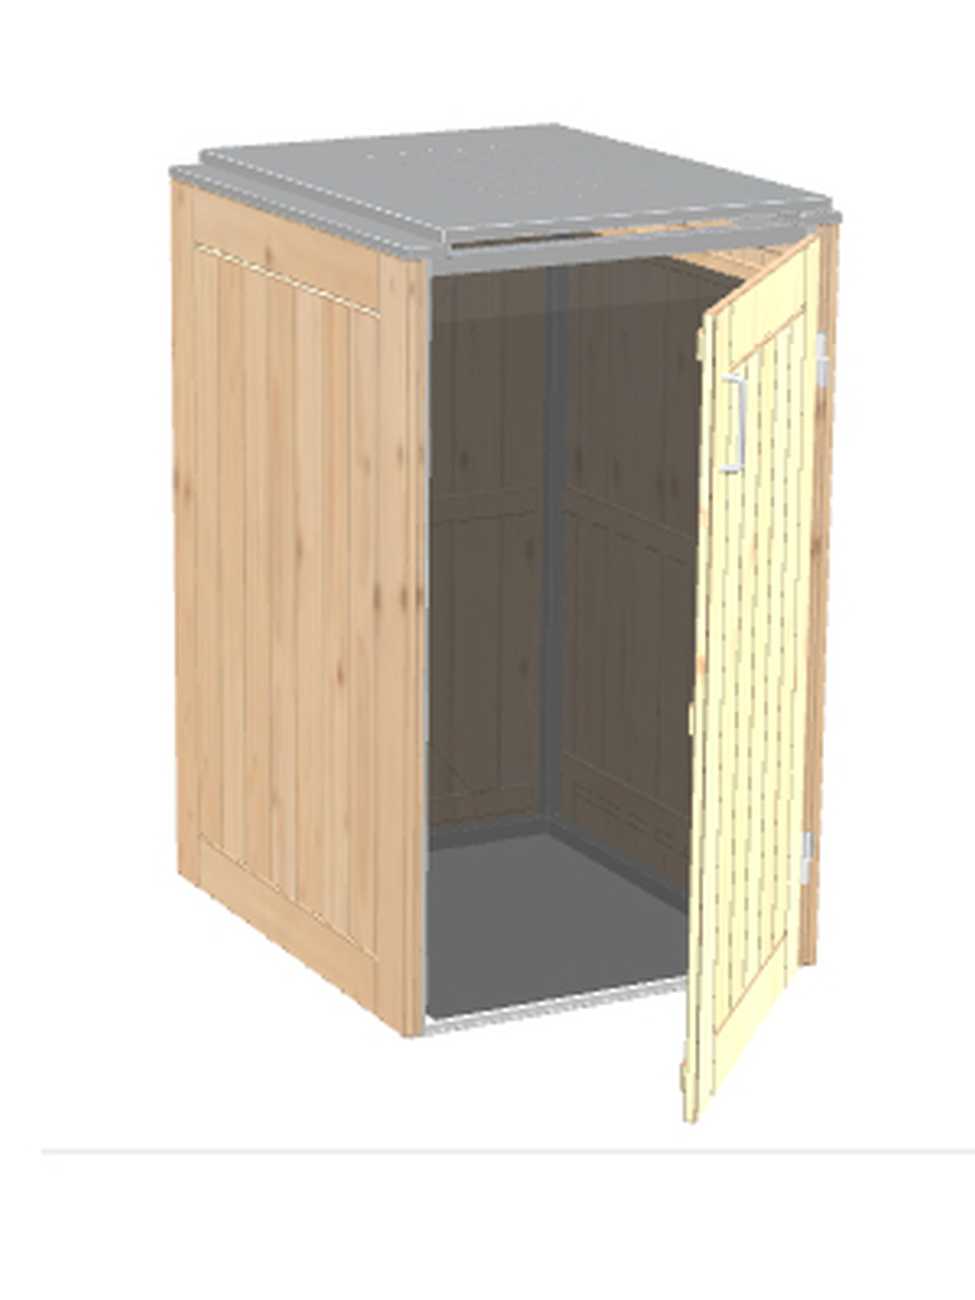 Müllbox Binto Nadelholzverkleidung mit Edelstahl-Klappdeckel